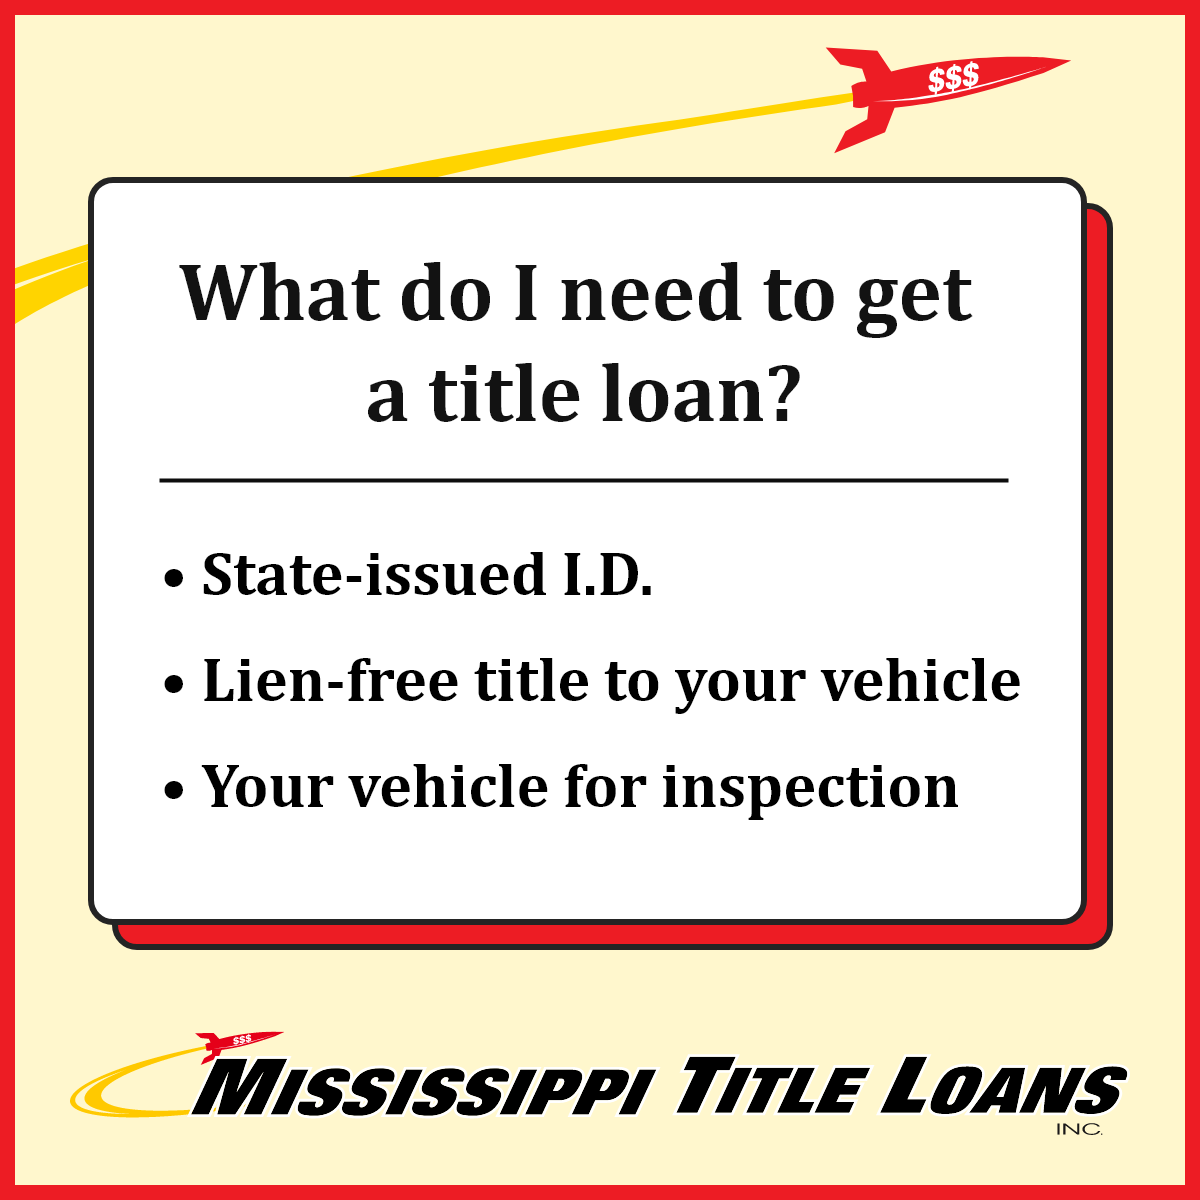 Mississippi Title Loans, Inc. 459 US-90, Waveland, MS 39576